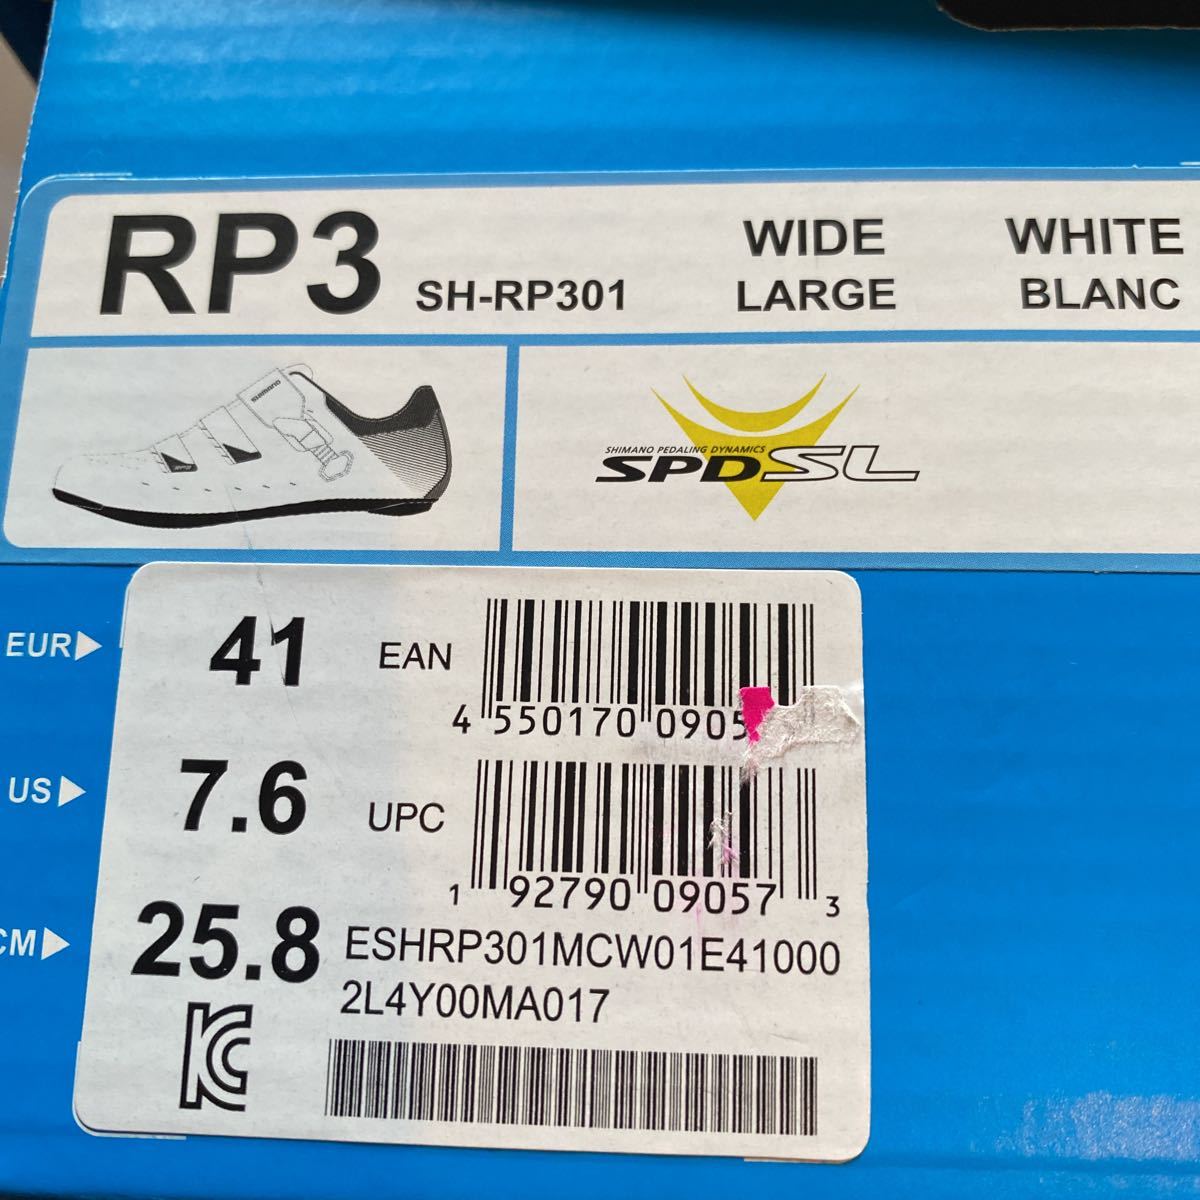  Shimano шоссейный велосипед обувь RP3 новый товар не использовался 